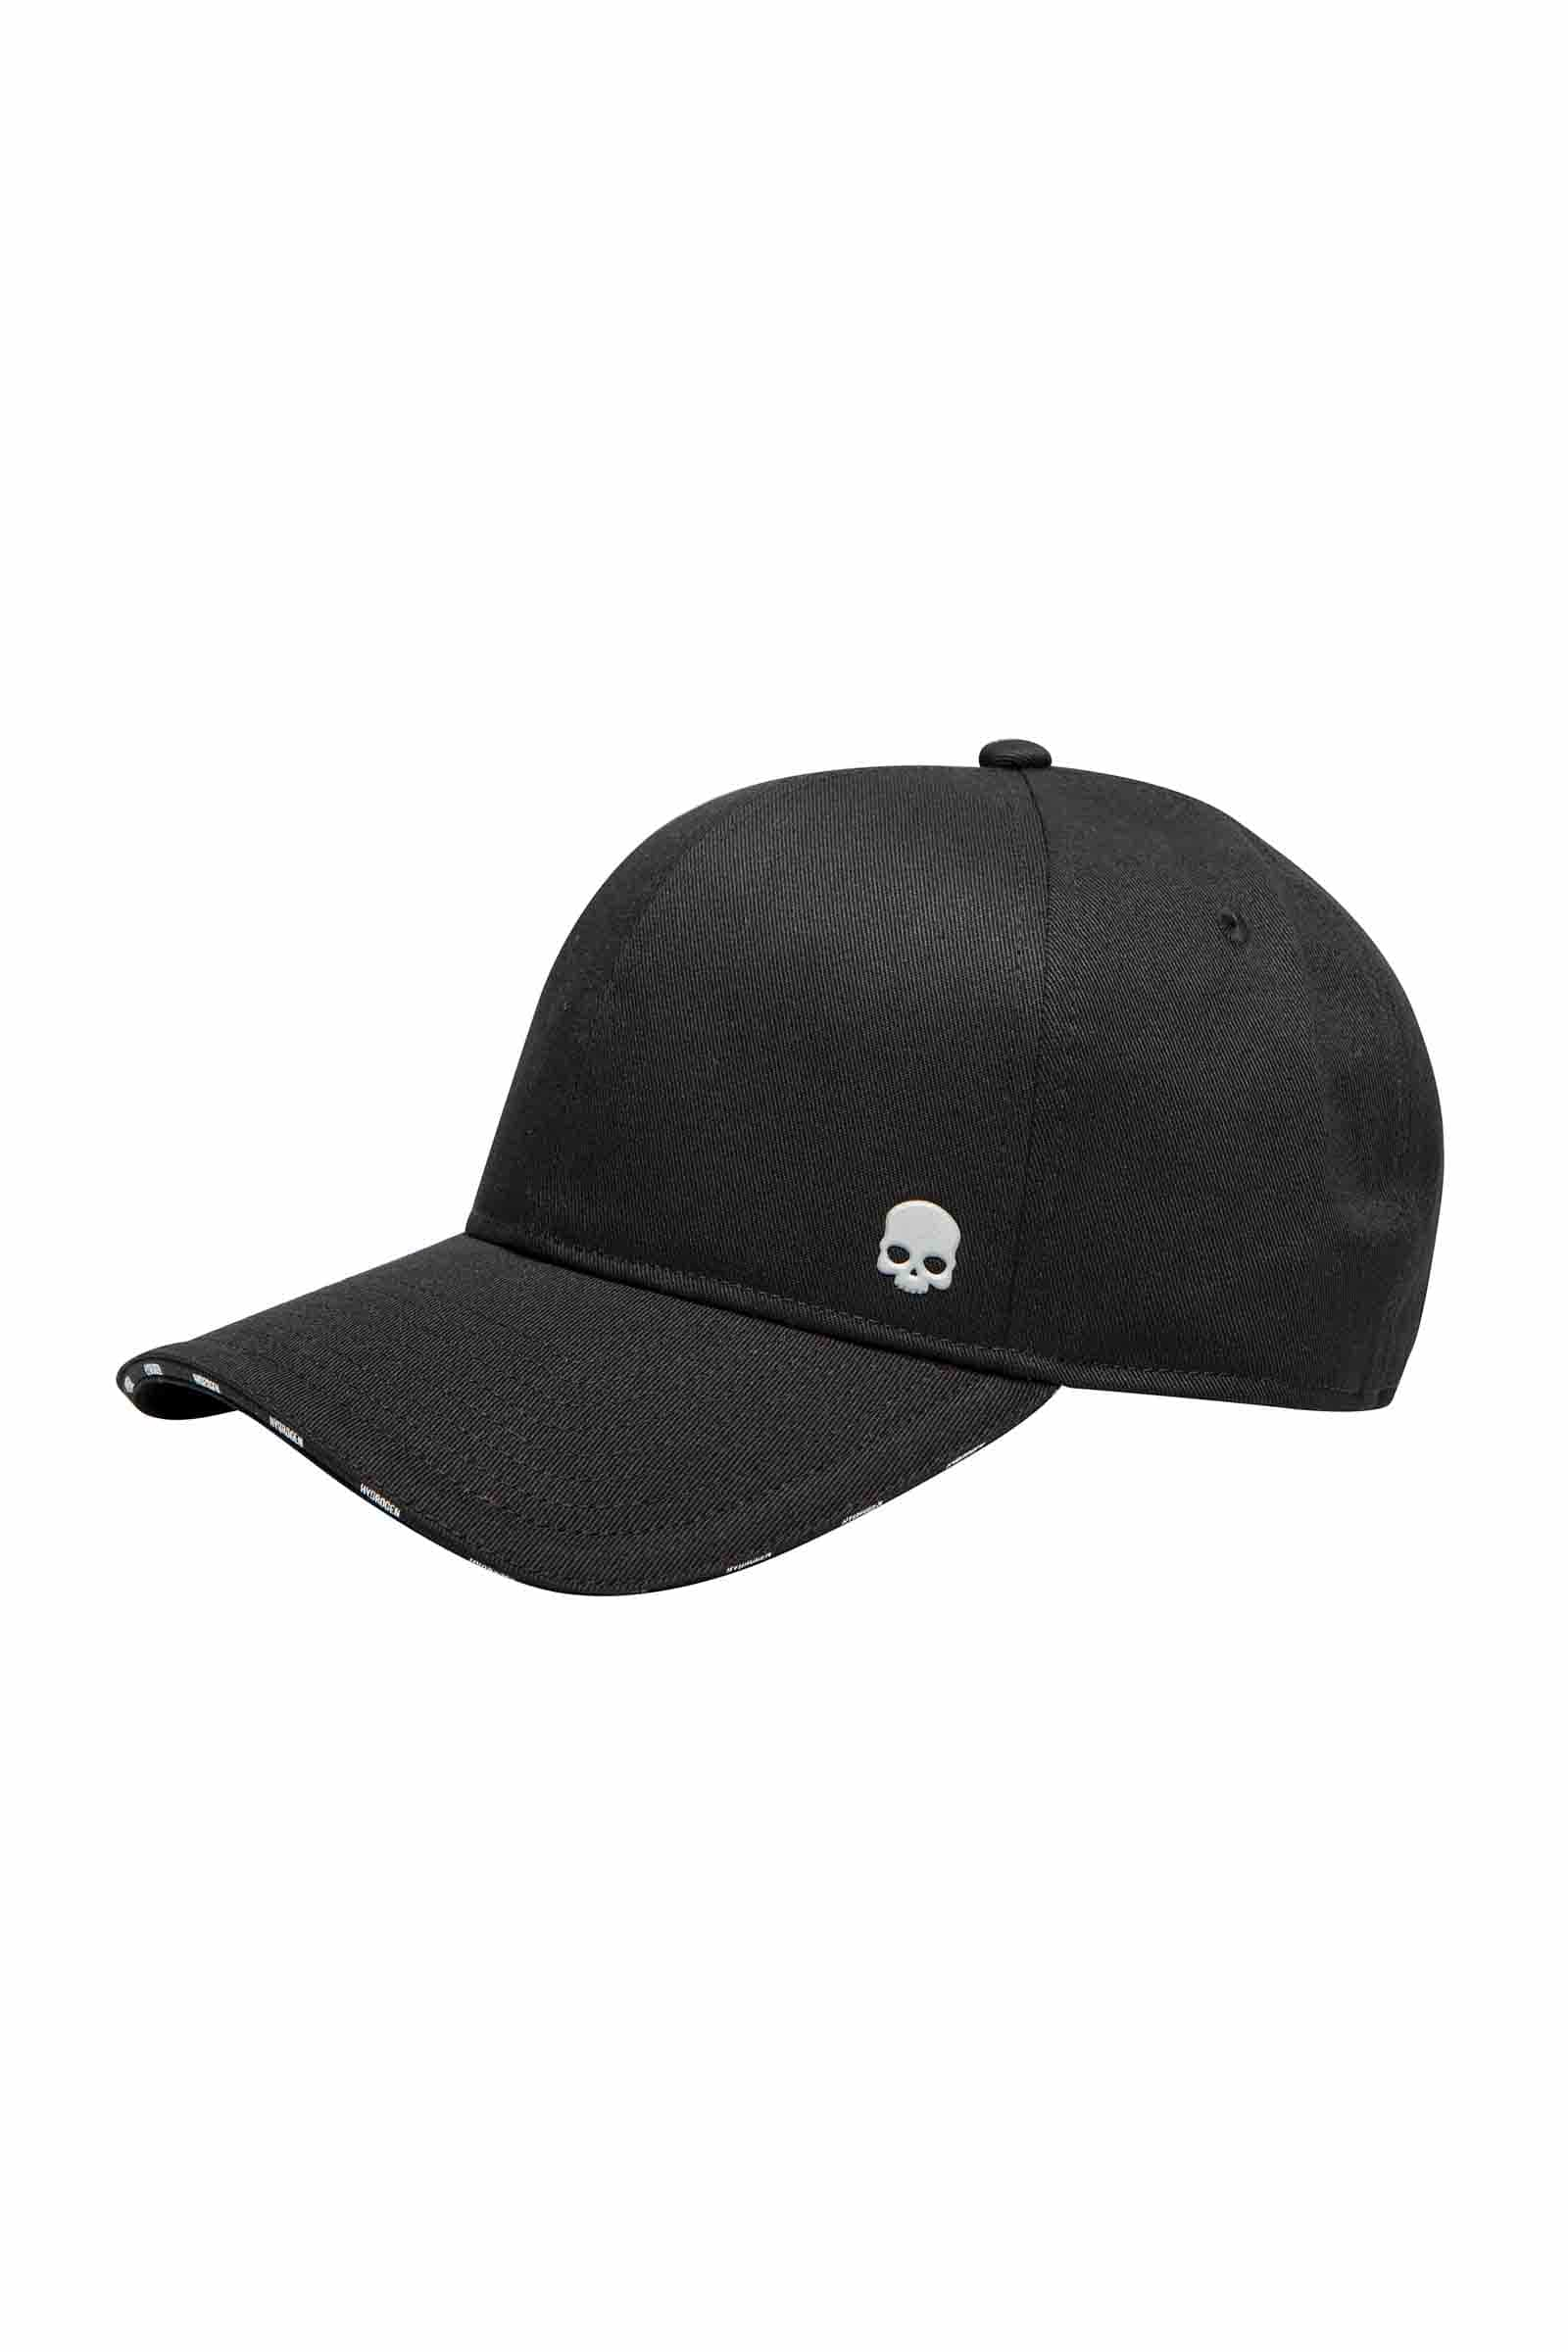 SKULL CAP - BLACK - Abbigliamento sportivo | Hydrogen